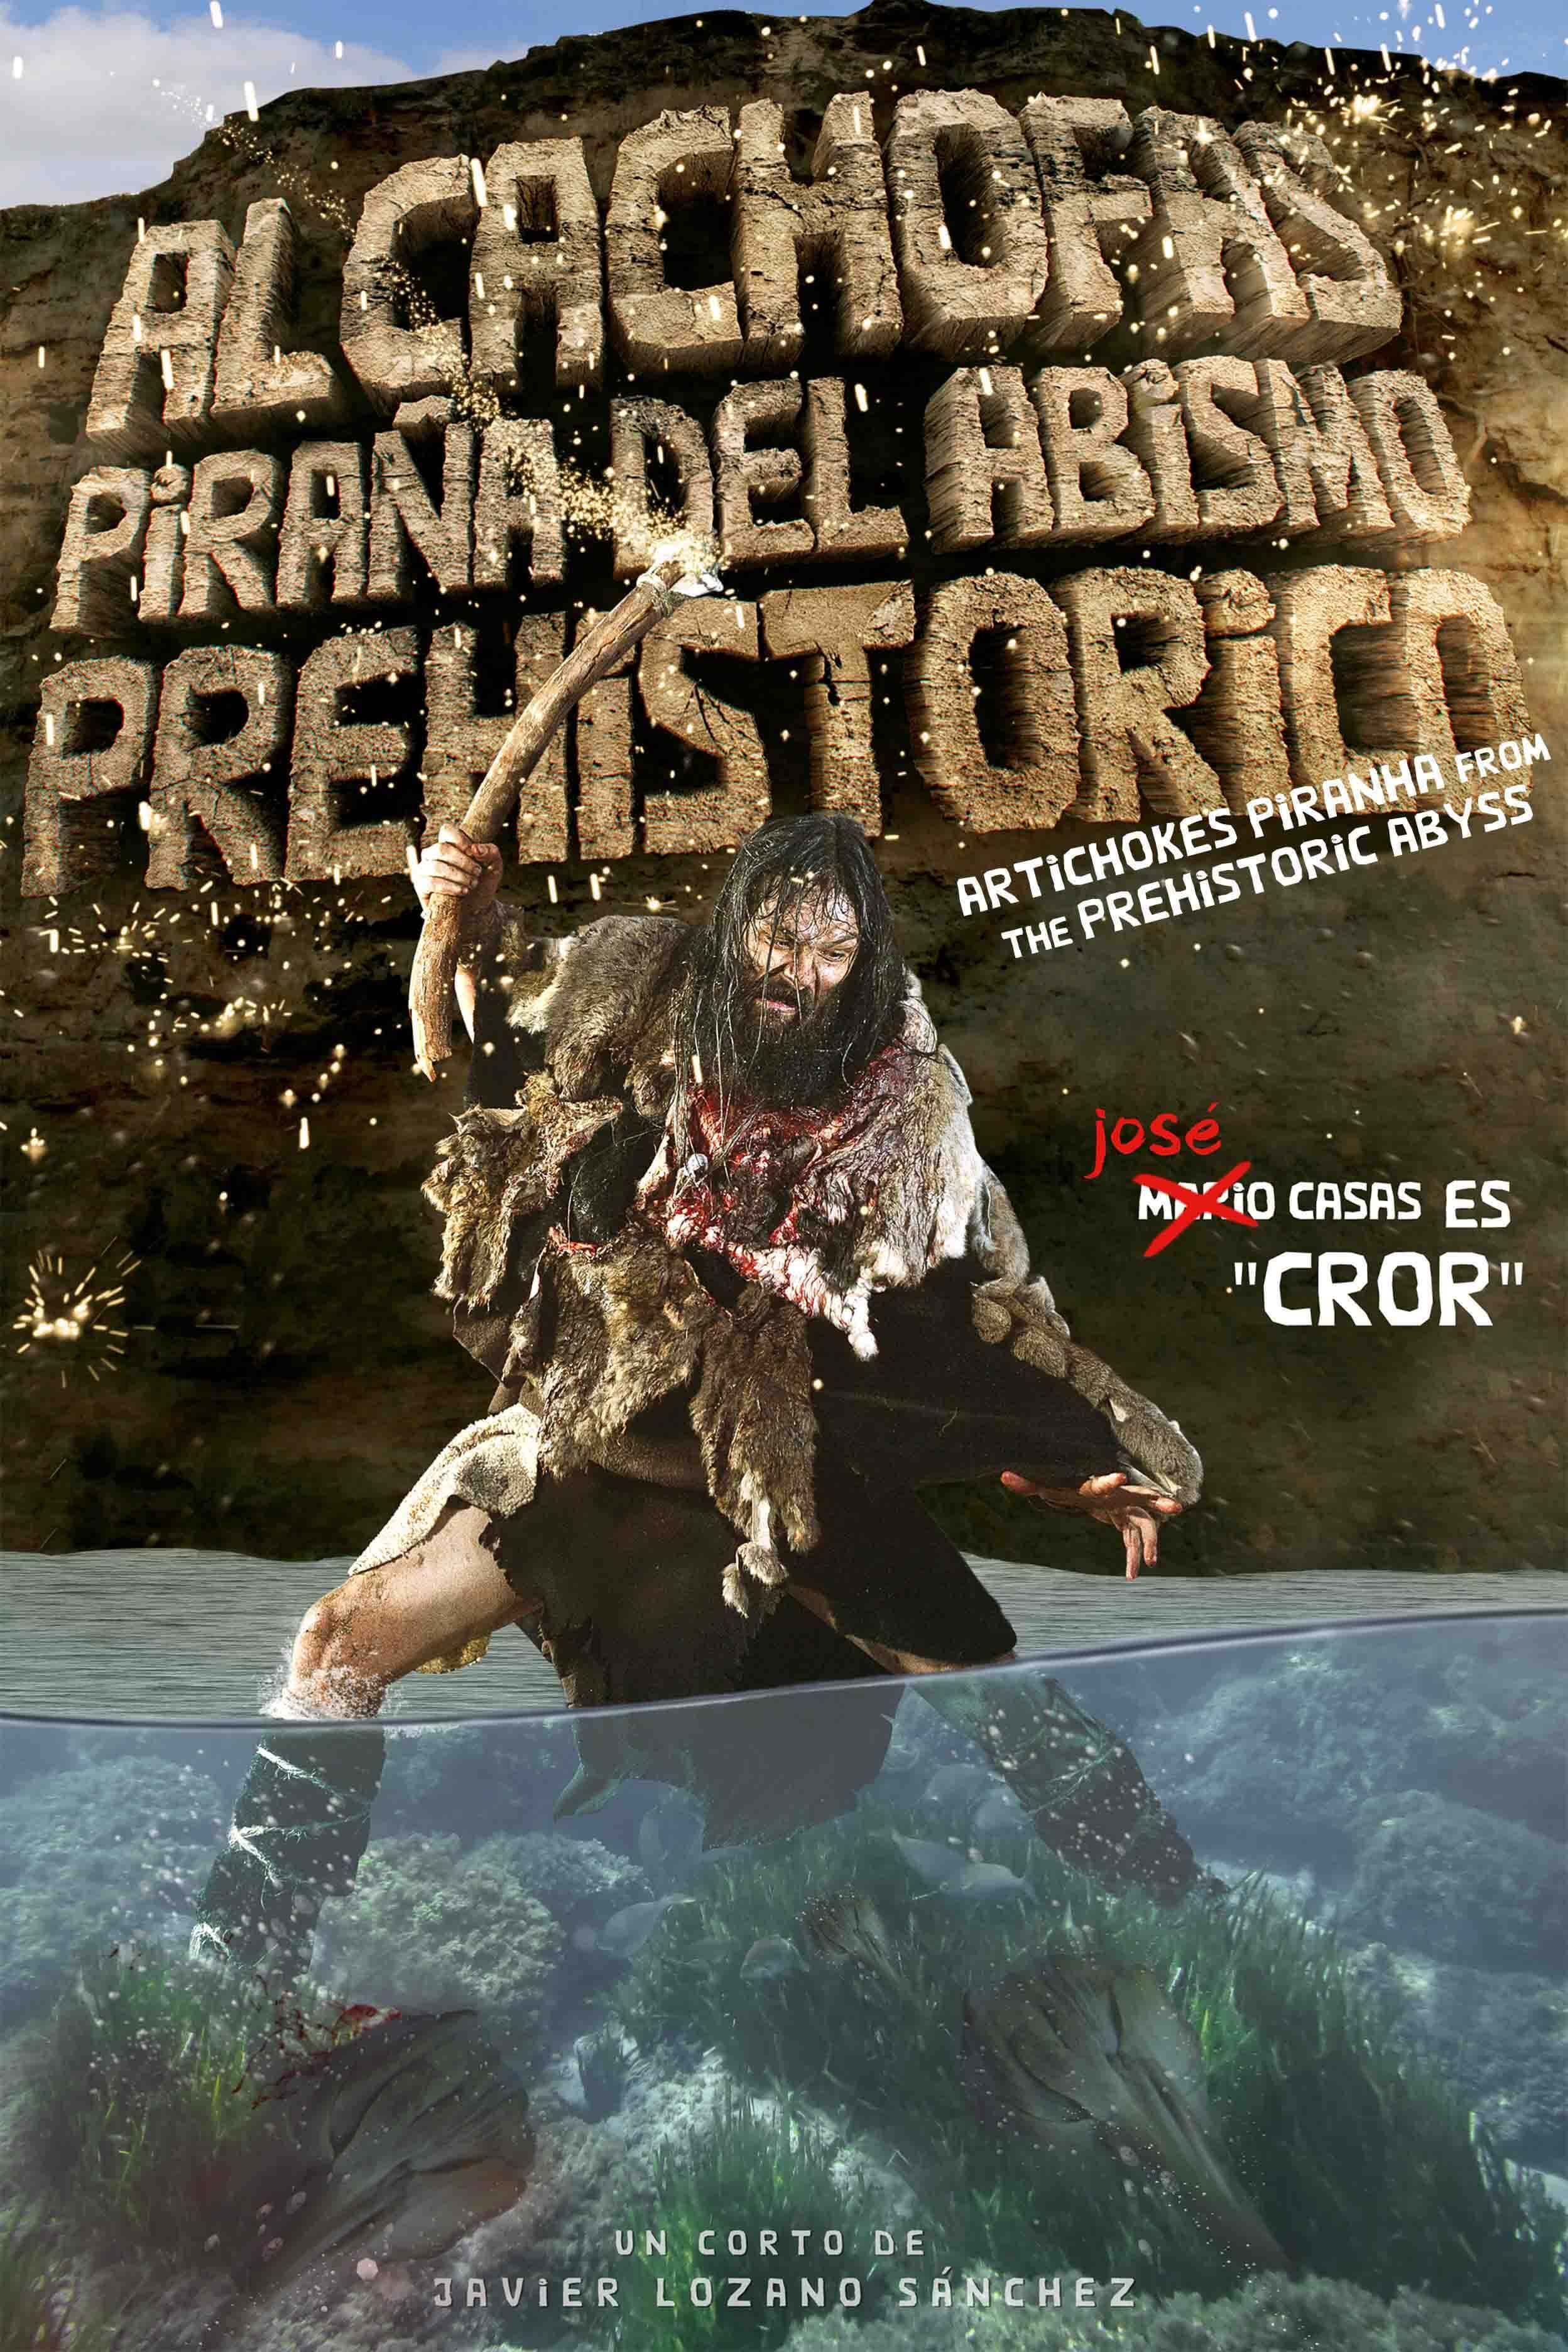 Poster Alcachofas Piraña del Abismo (Alcachofas Piraña del Abismo Prehistórico)